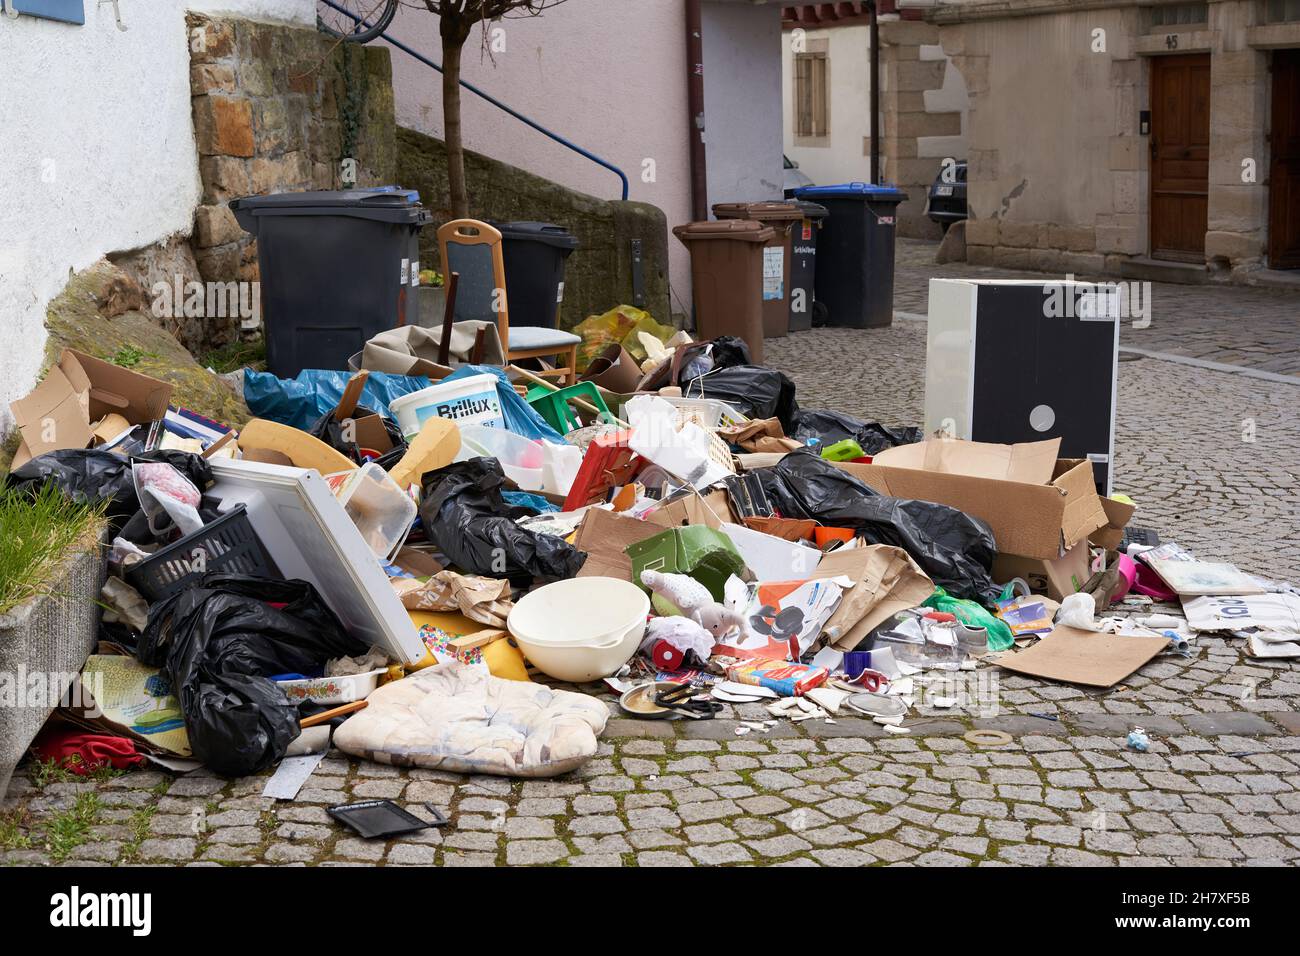 Nurtingen, Deutschland - 20. März 2021: Müll stapelt sich auf den Straßen. Alte Haushaltsgeräte und Verpackungen sowie Abfall und Lebensmittel. Stockfoto